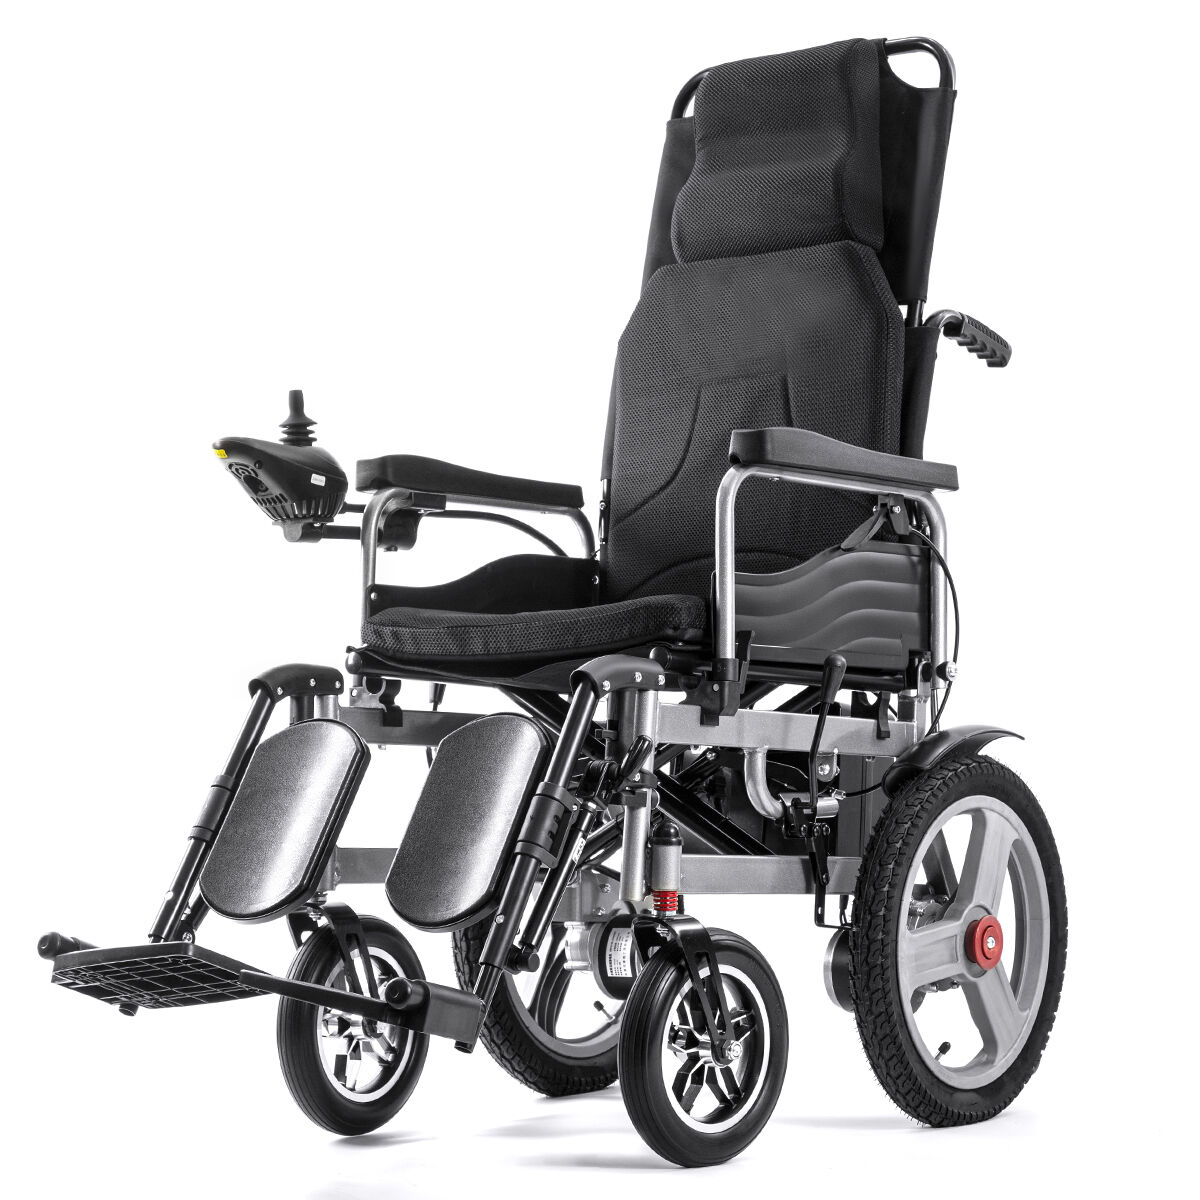 BC-ES6003A-LW складная электрическая инвалидная коляска повышенной проходимости с откидной спинкой